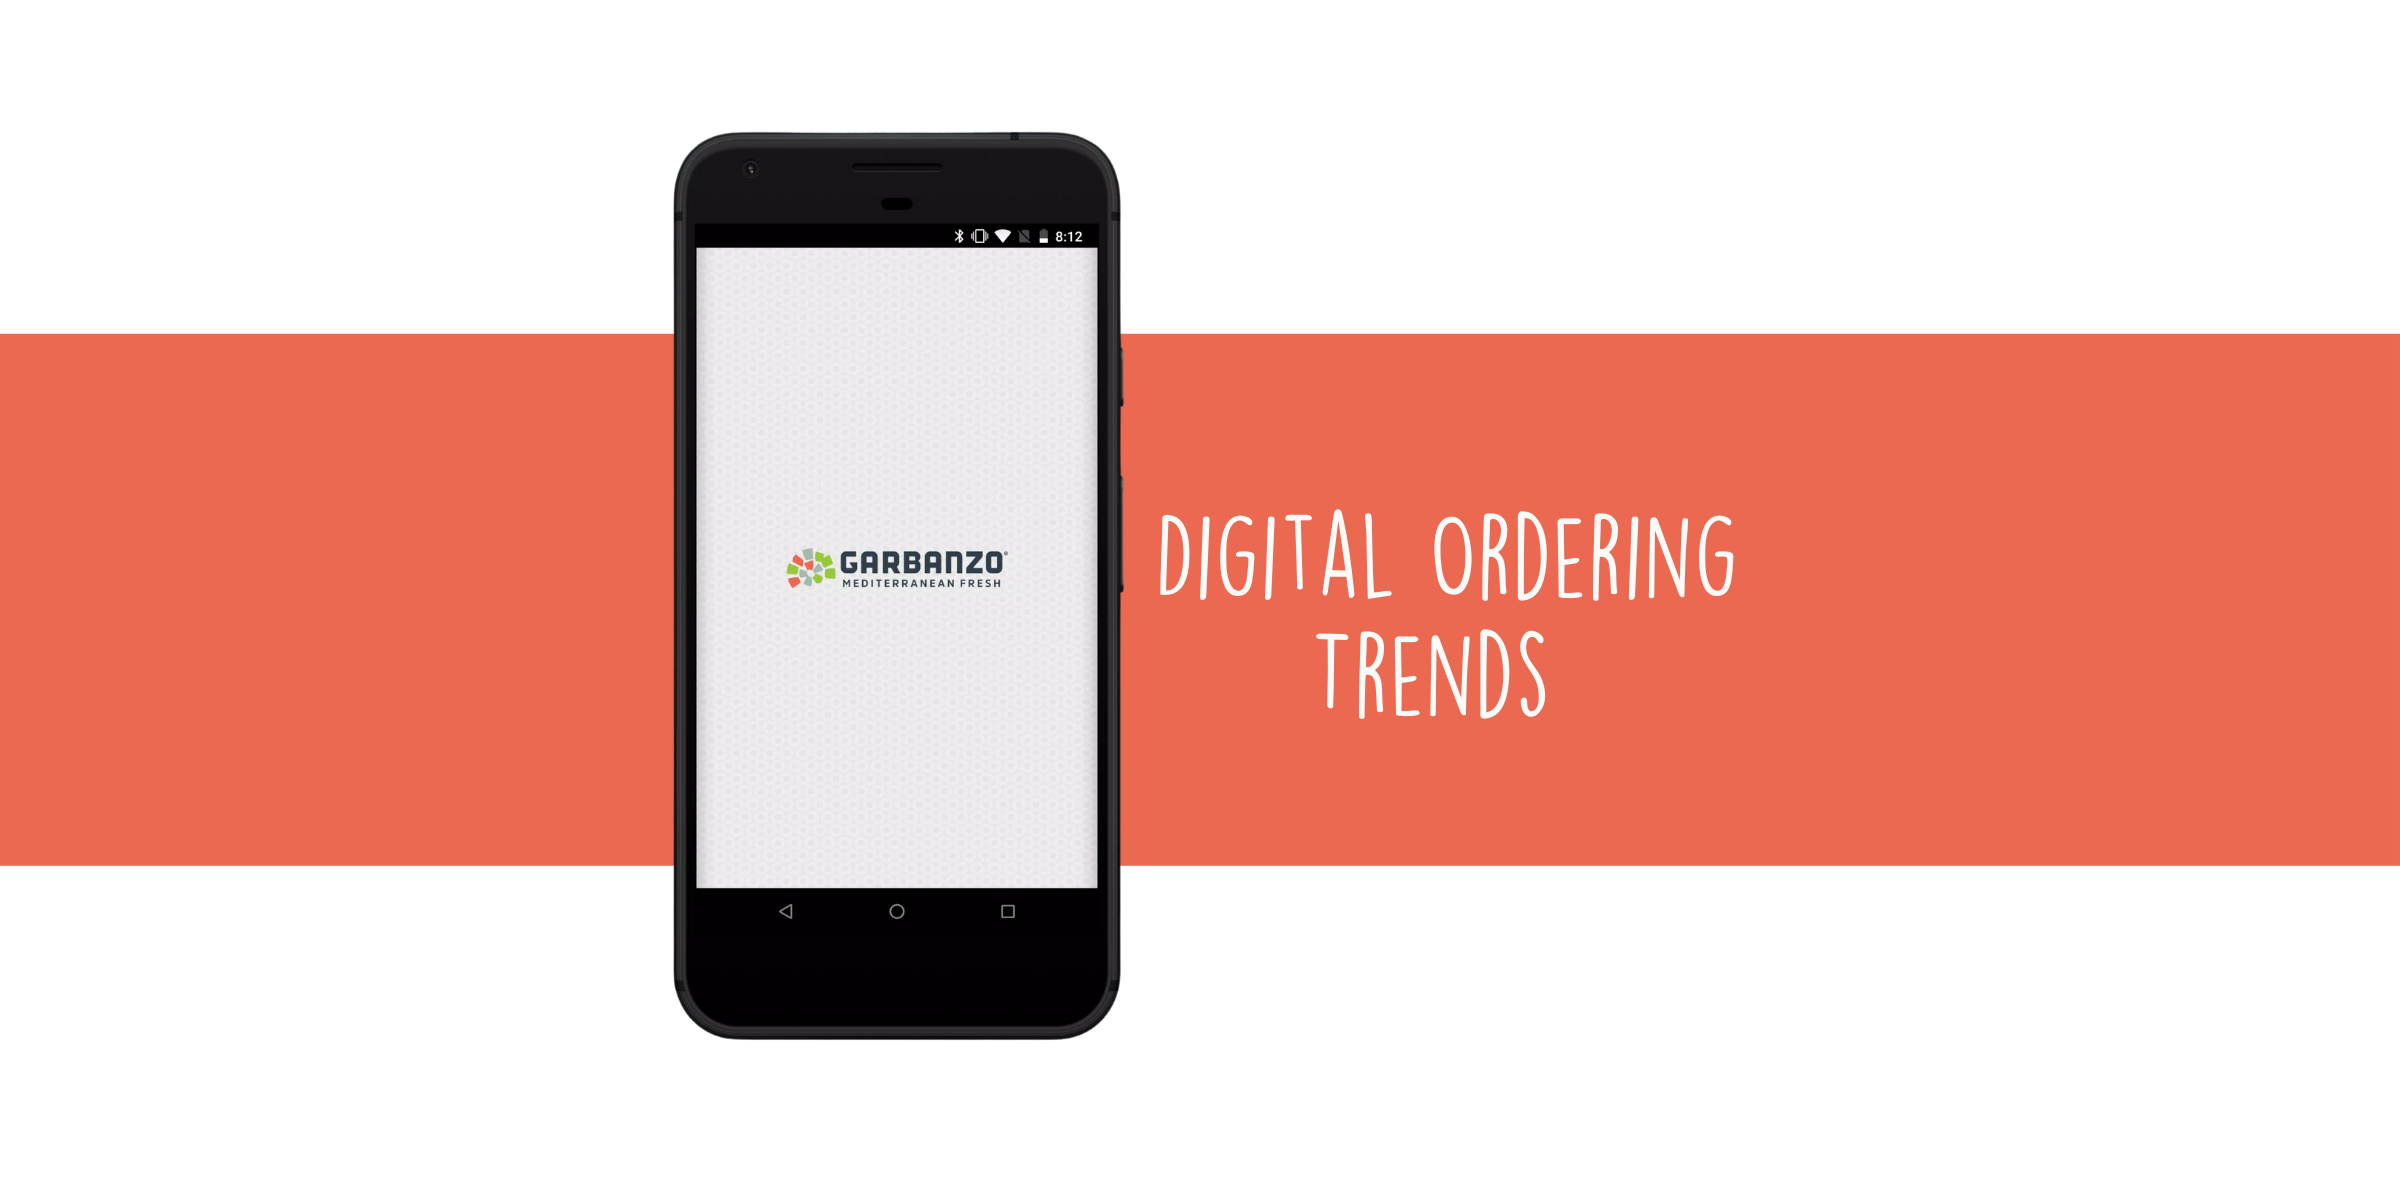 Digital Ordering Trends